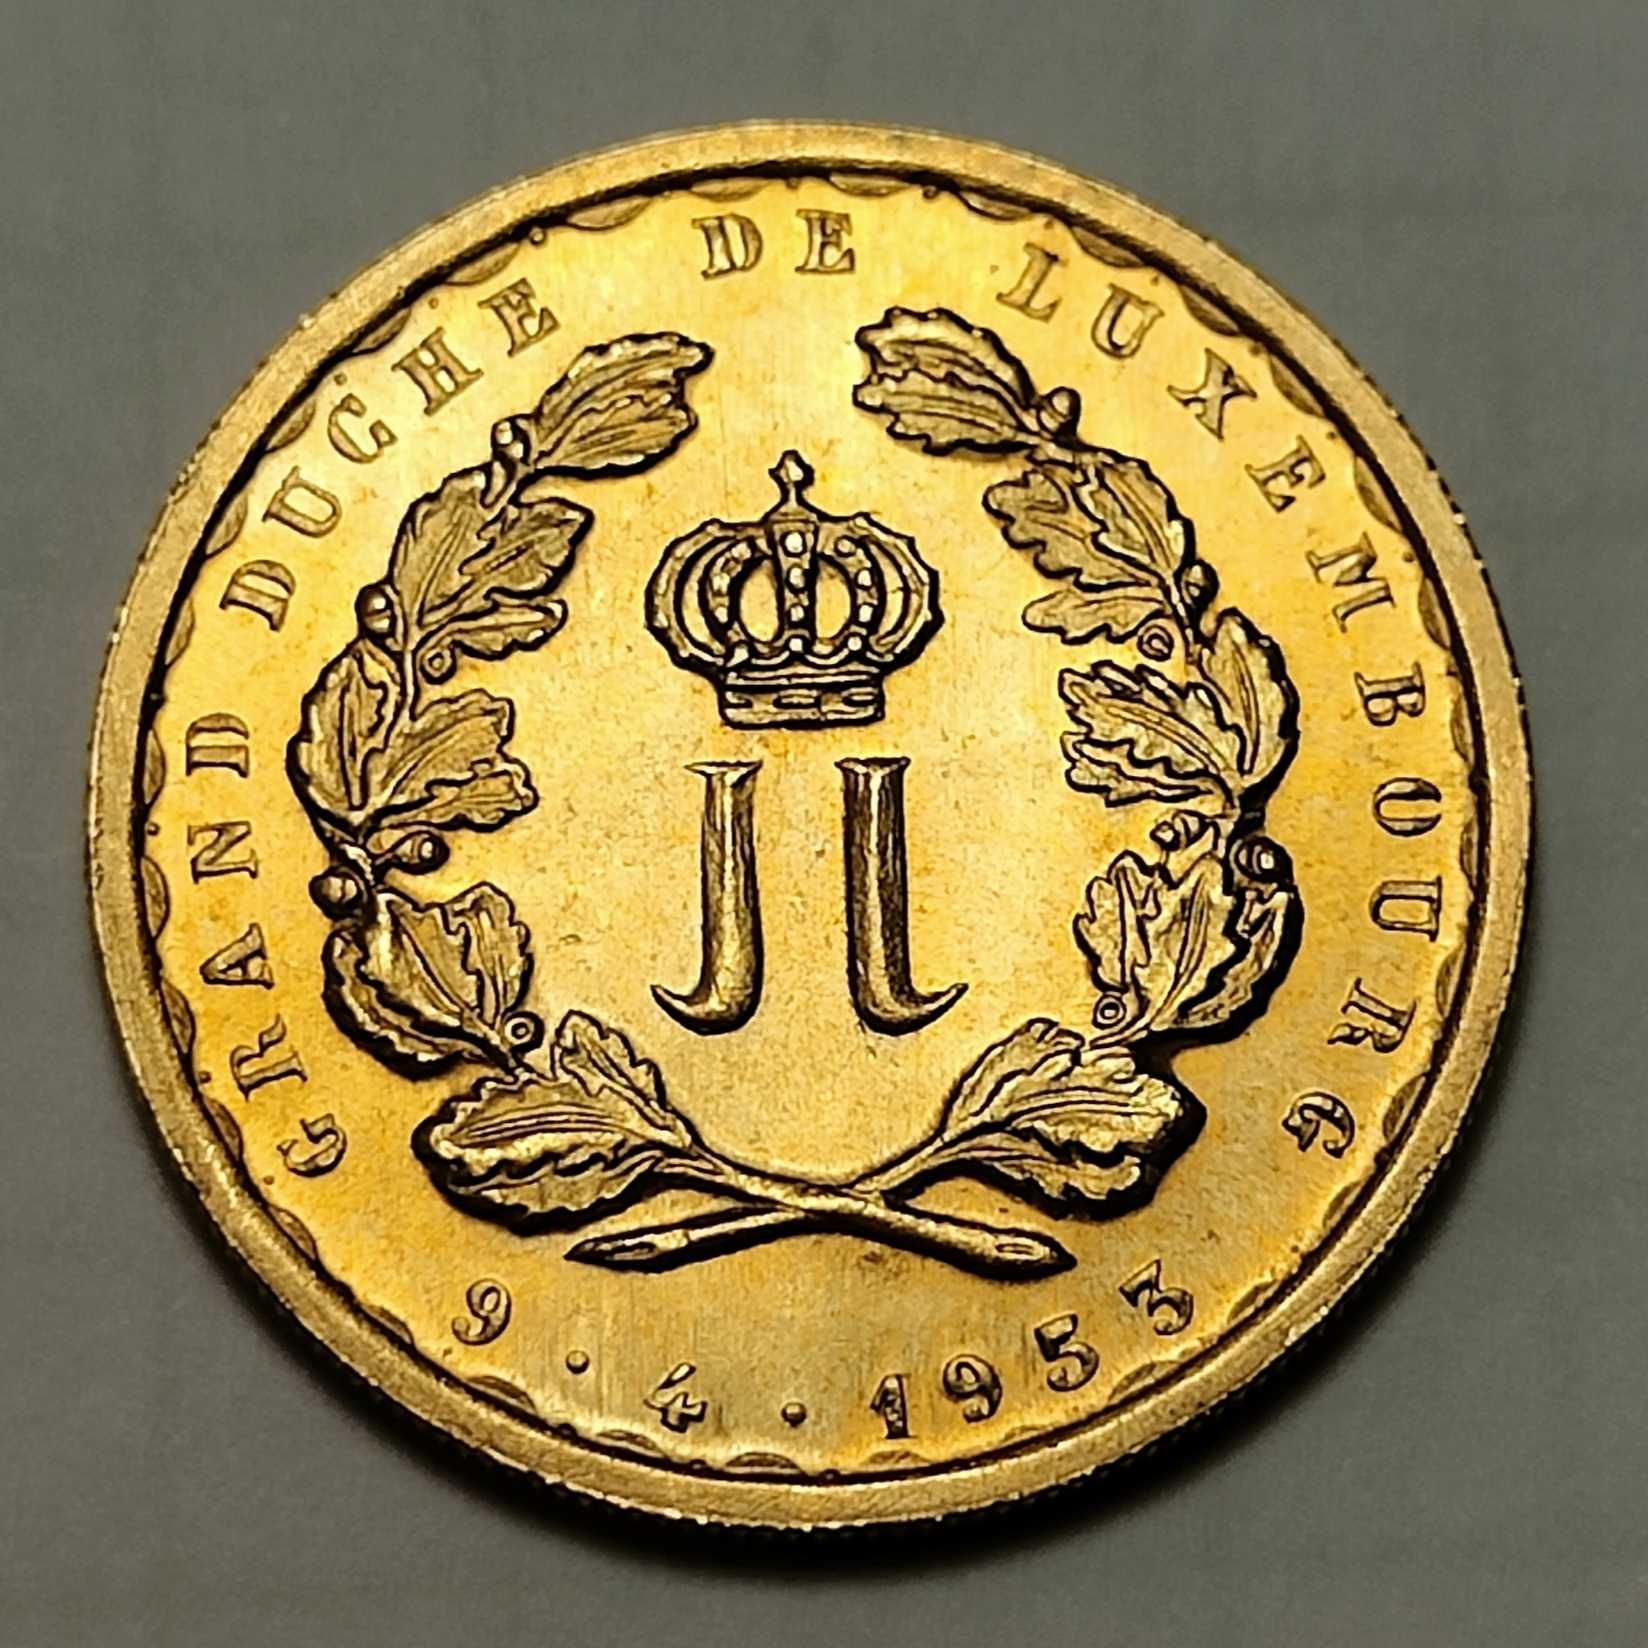 20 франков 1953, 1964 Люксембург, Тираж 25 тыс, золото